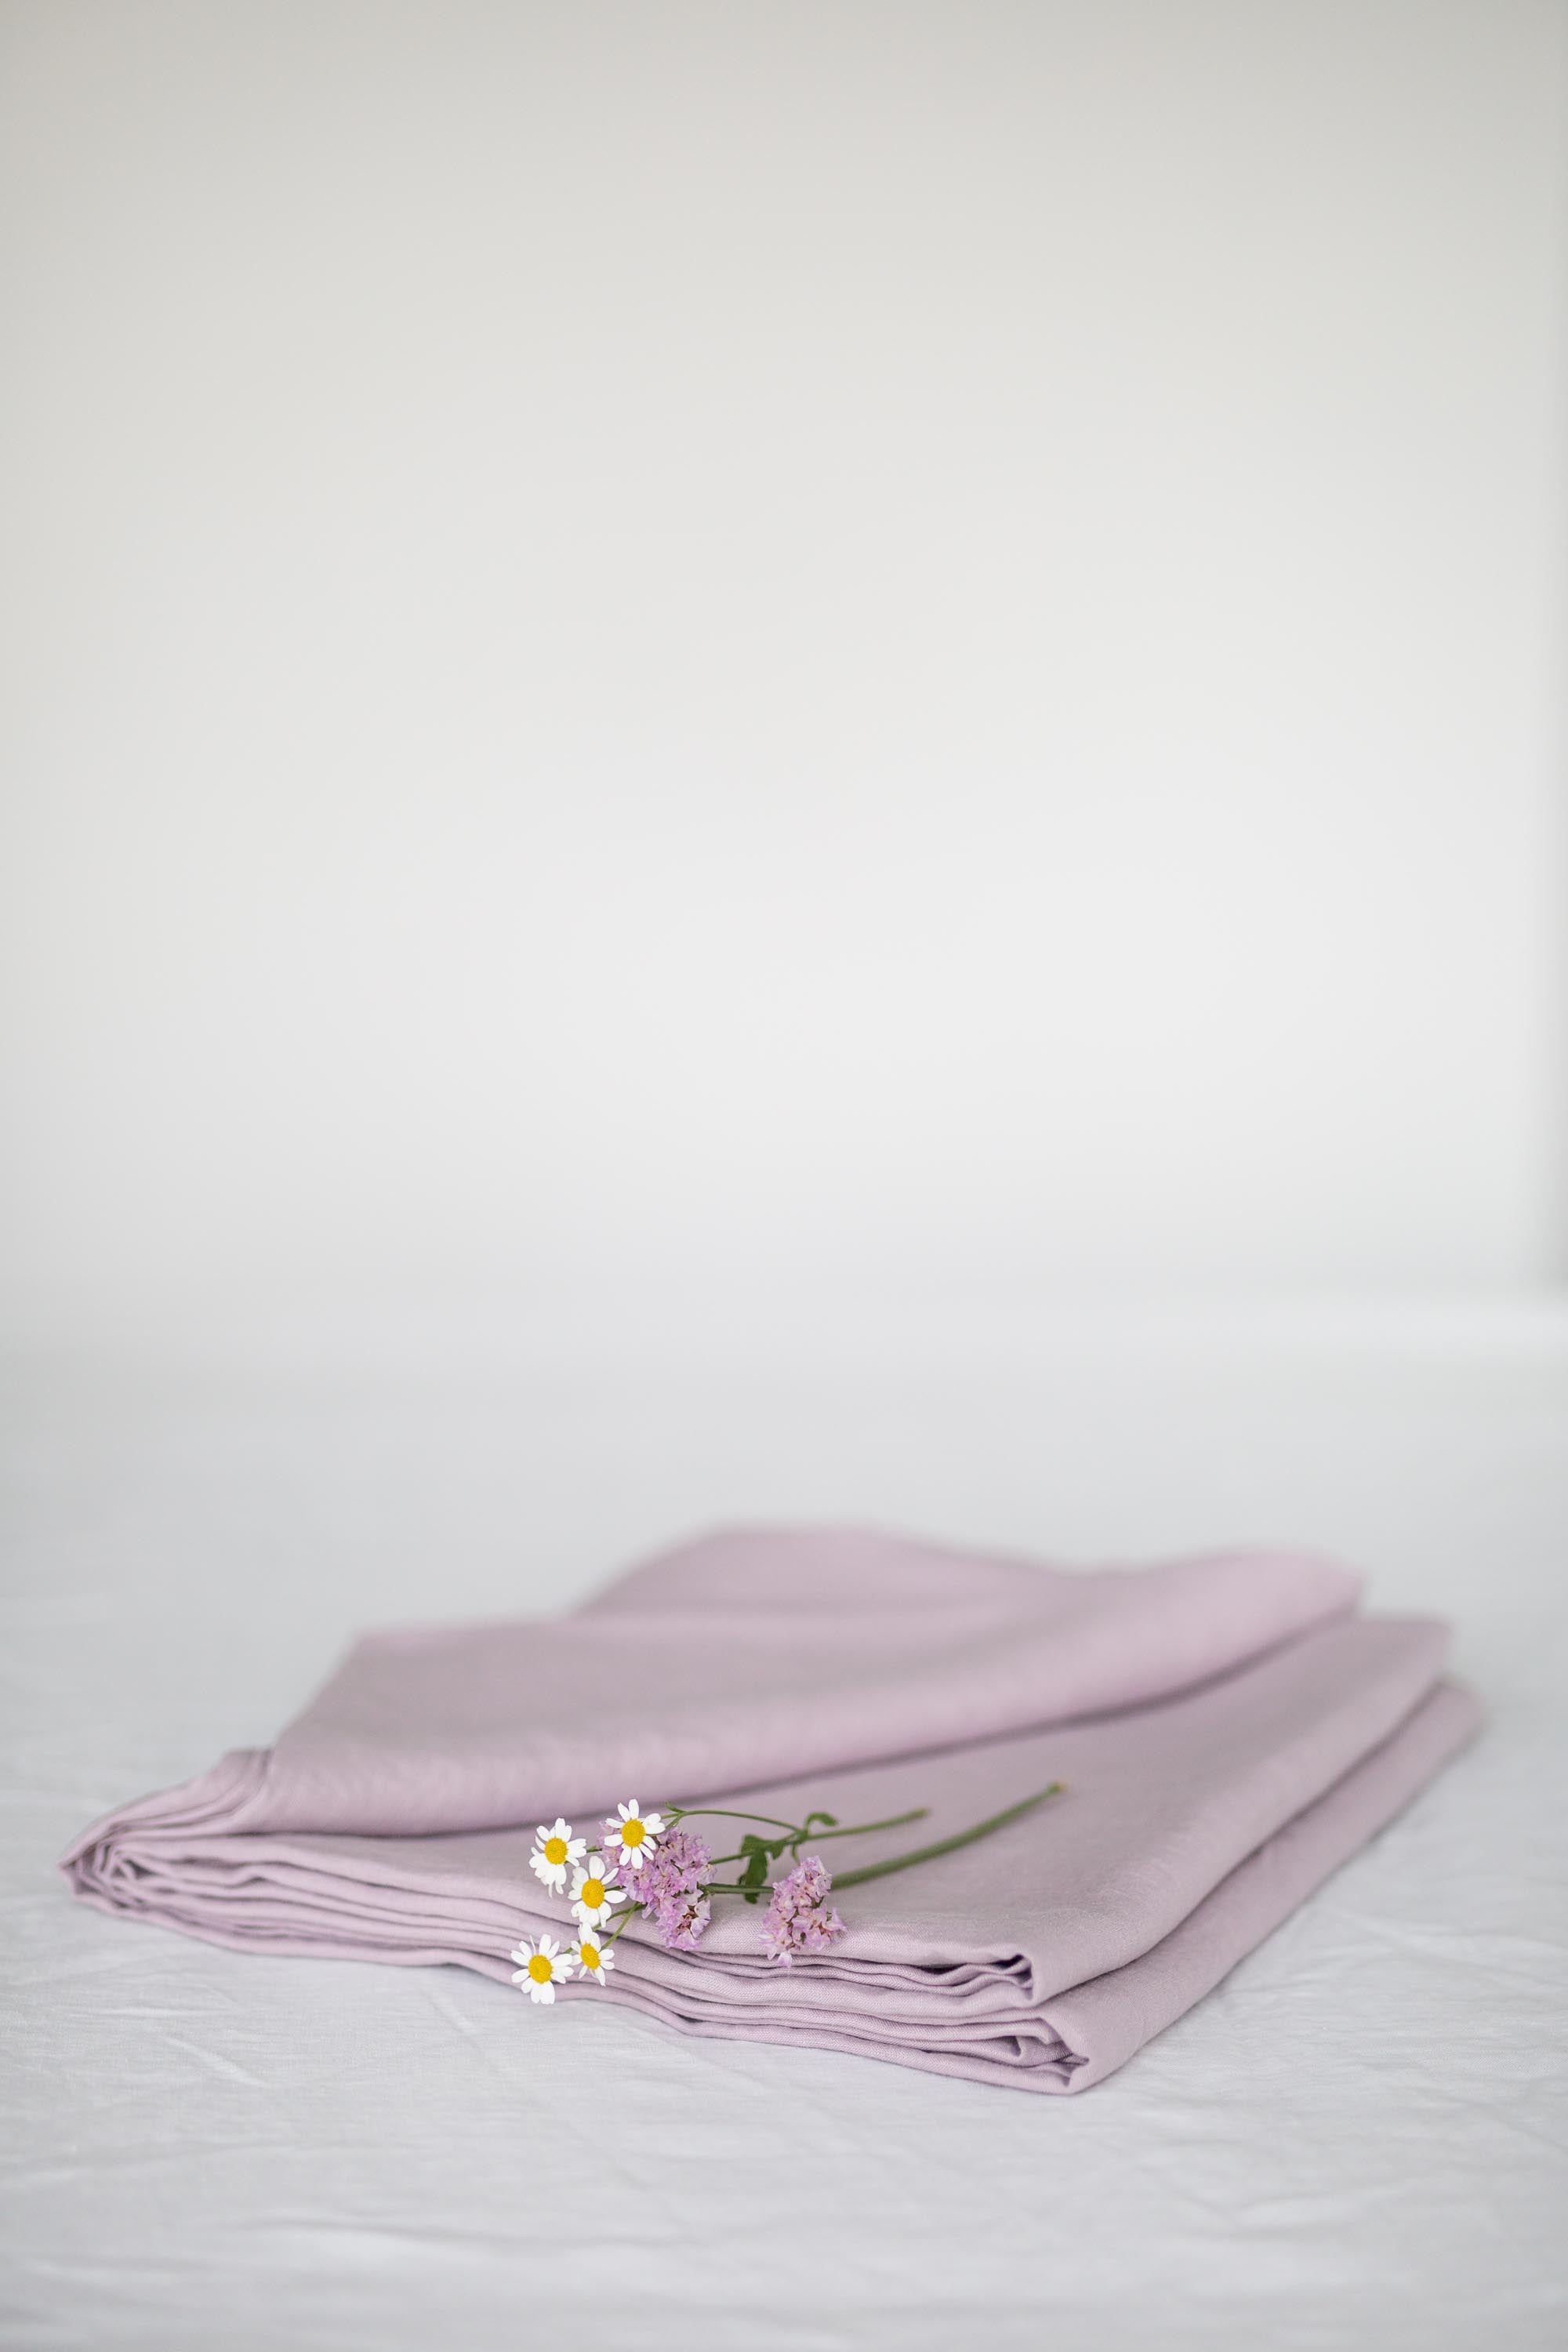 Dusty Rose Linen Flat Sheet With a few flowers By AmoruLinen